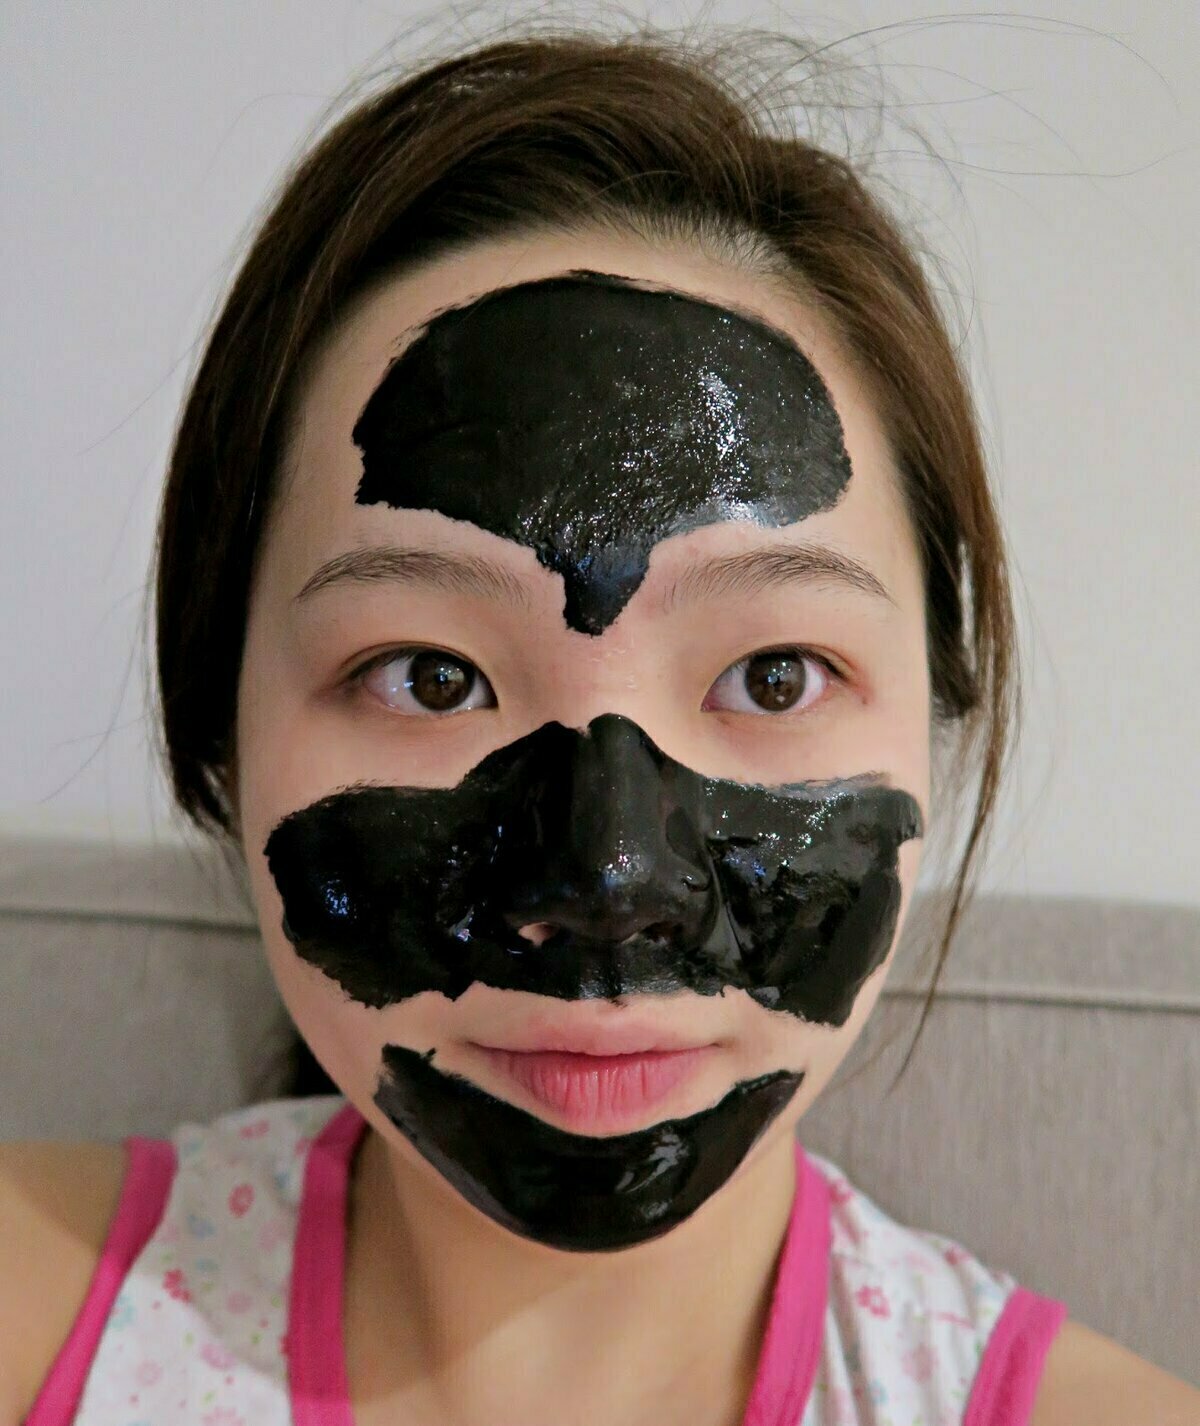 Как пользоваться черной маской из китая? как использовать black mask?